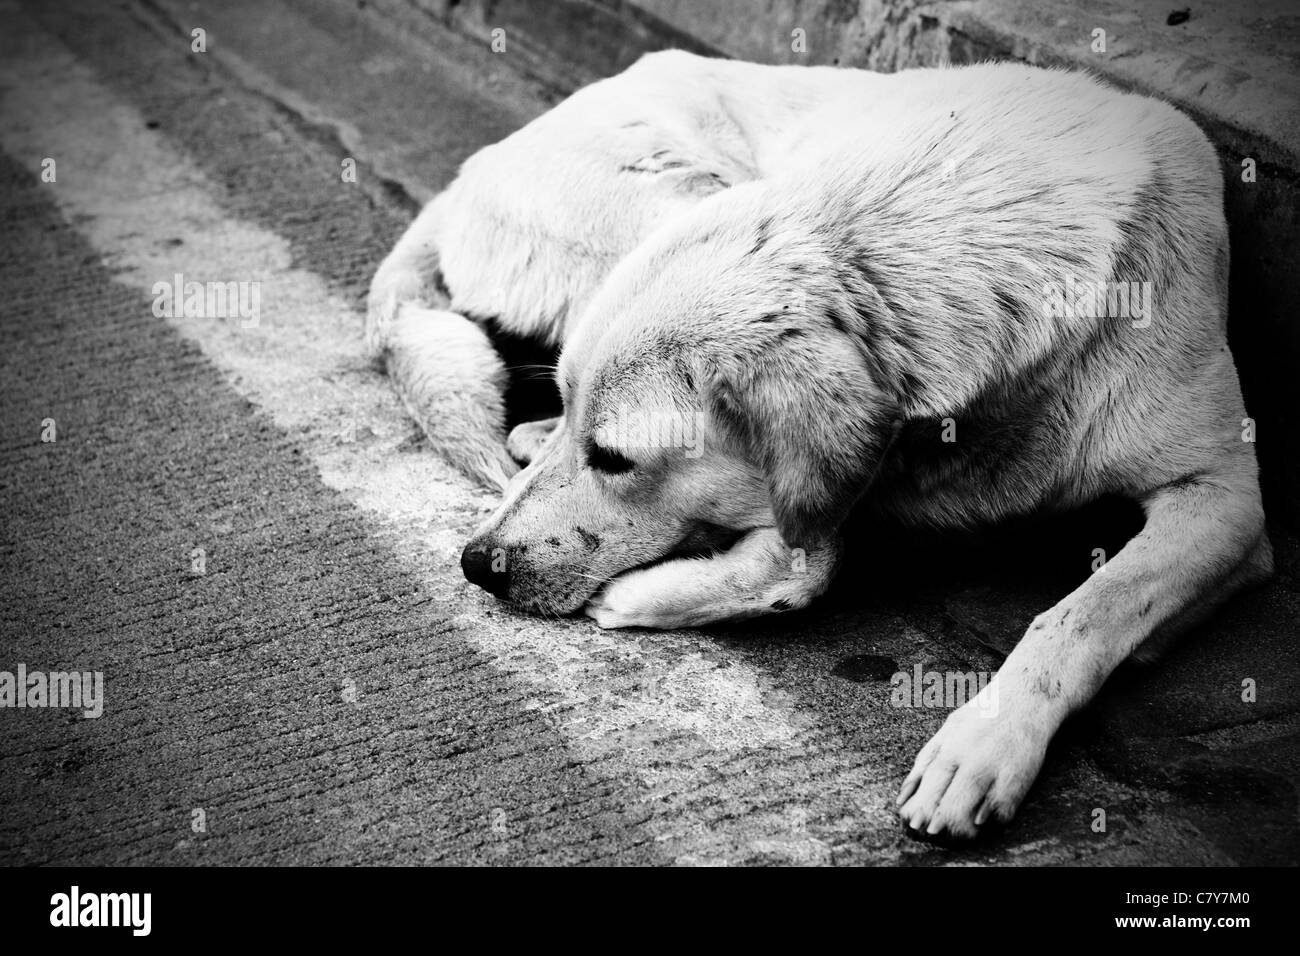 Senzatetto cane randagio che stabilisce a livello urbano road. Immagine in bianco e nero. Foto Stock